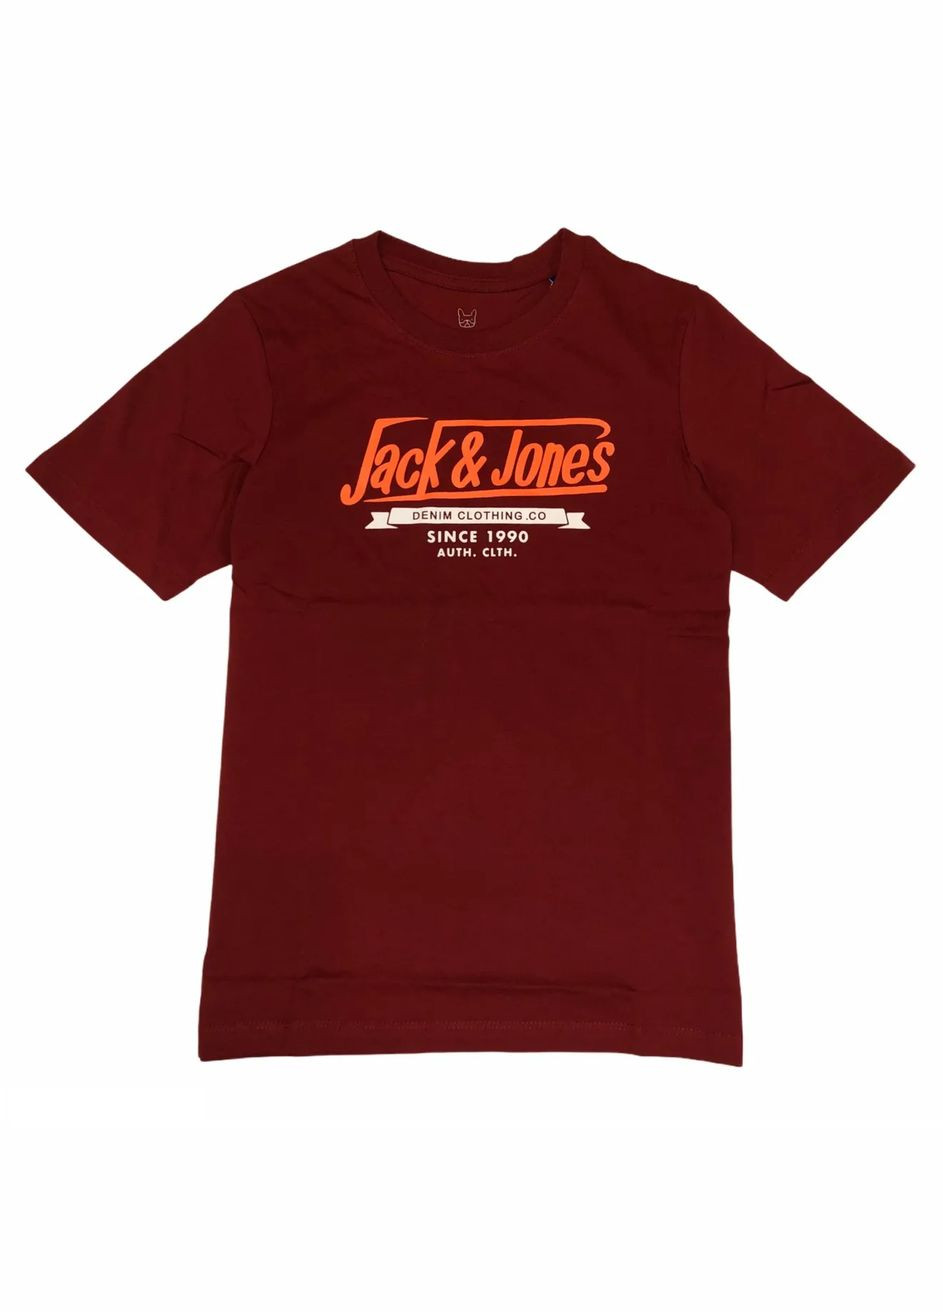 Бордовая демисезонная футболка для парня 12173882 бордовая с оранжевой надписью (140 см) Jack & Jones